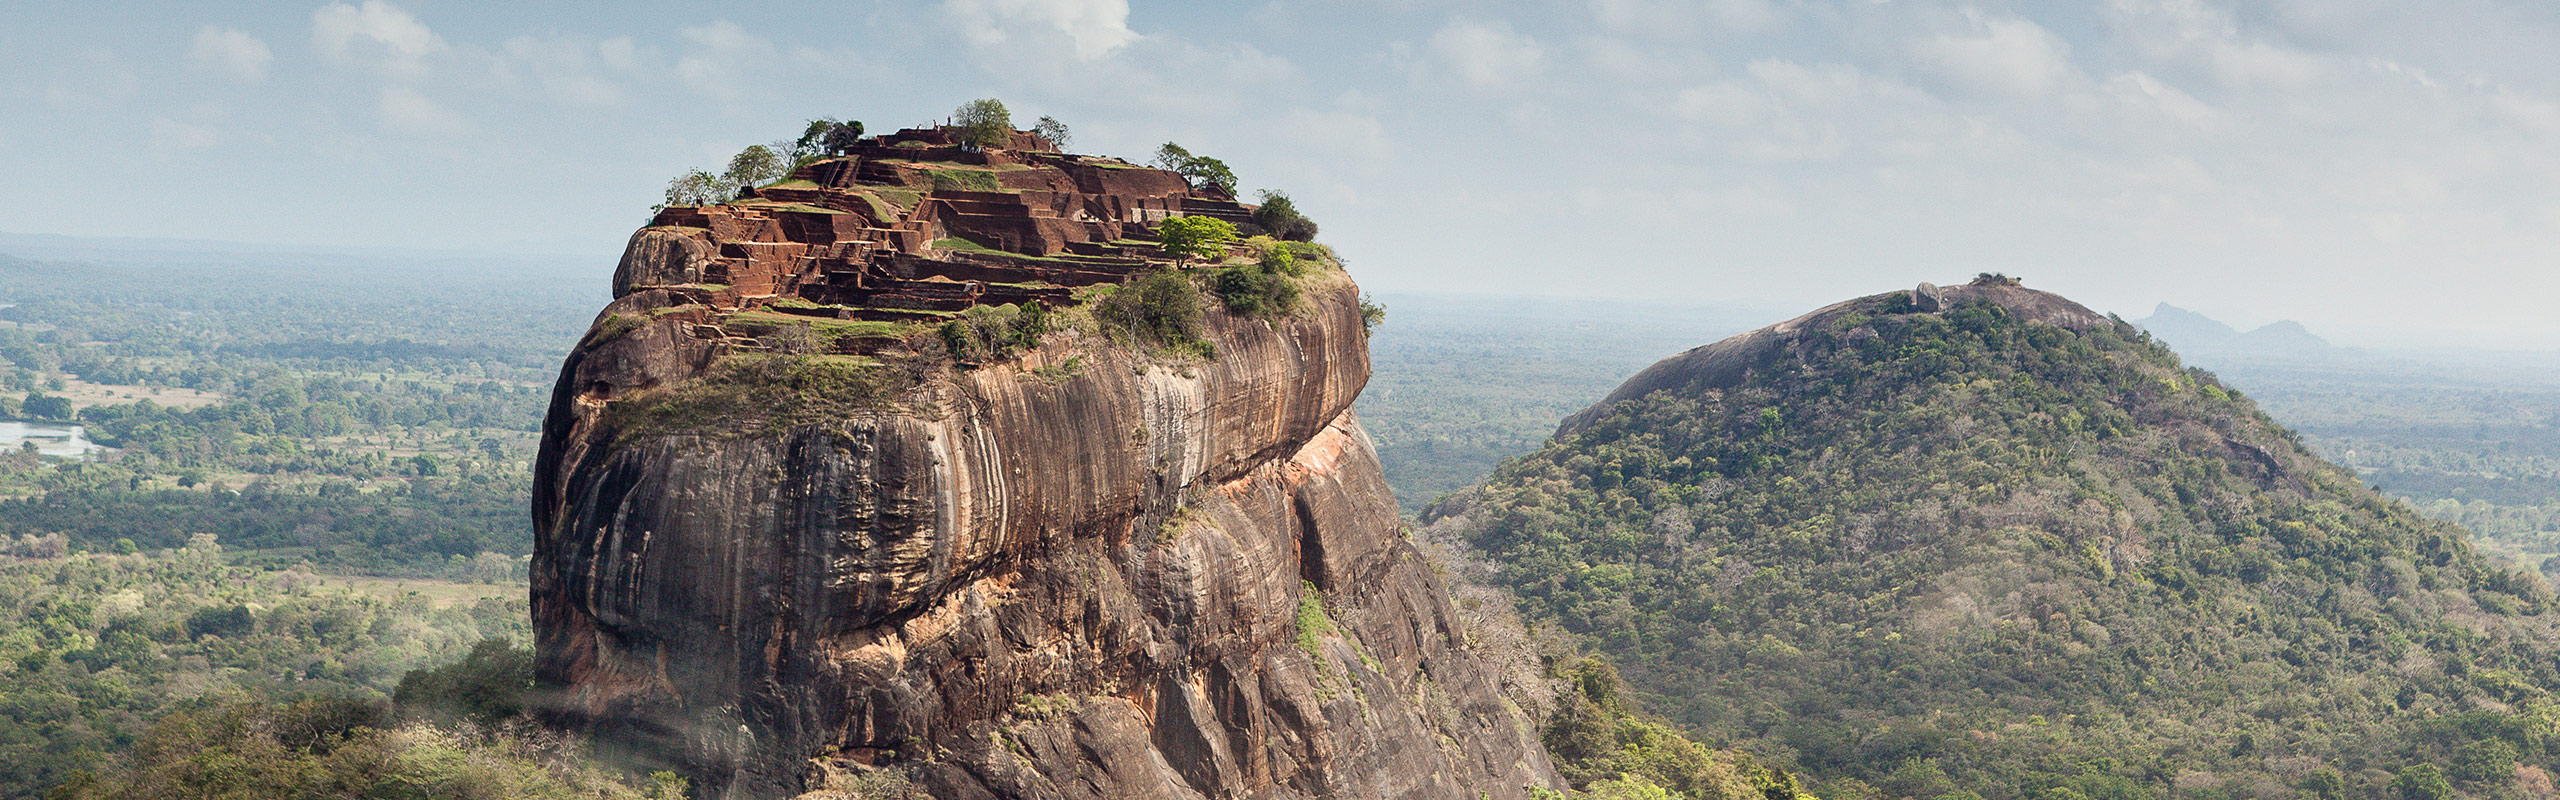 Things to do in Sri Lanka | Soultrek Travel